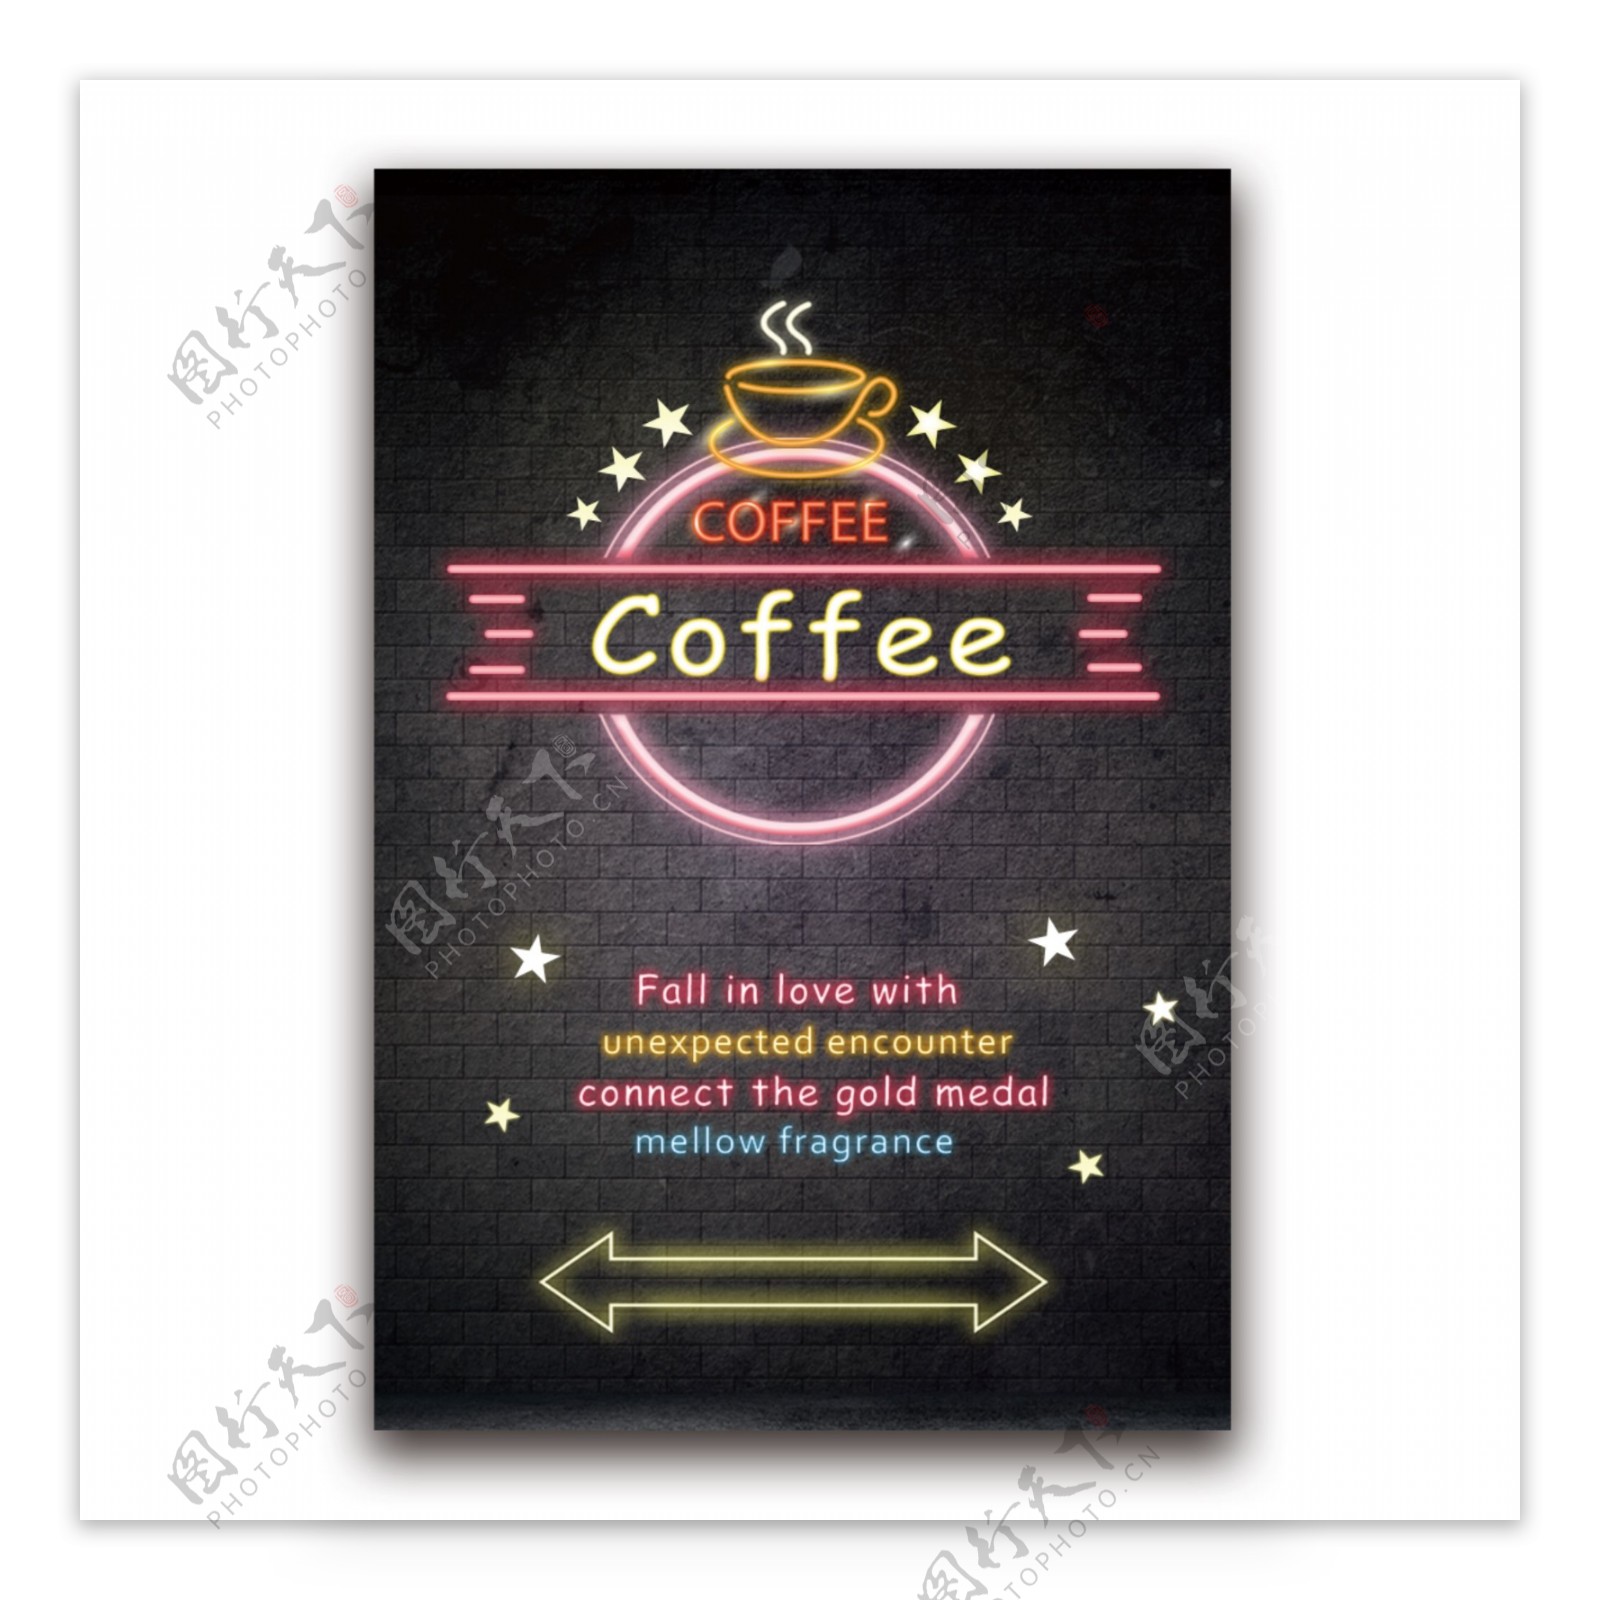 多彩的霓虹咖啡海报设计